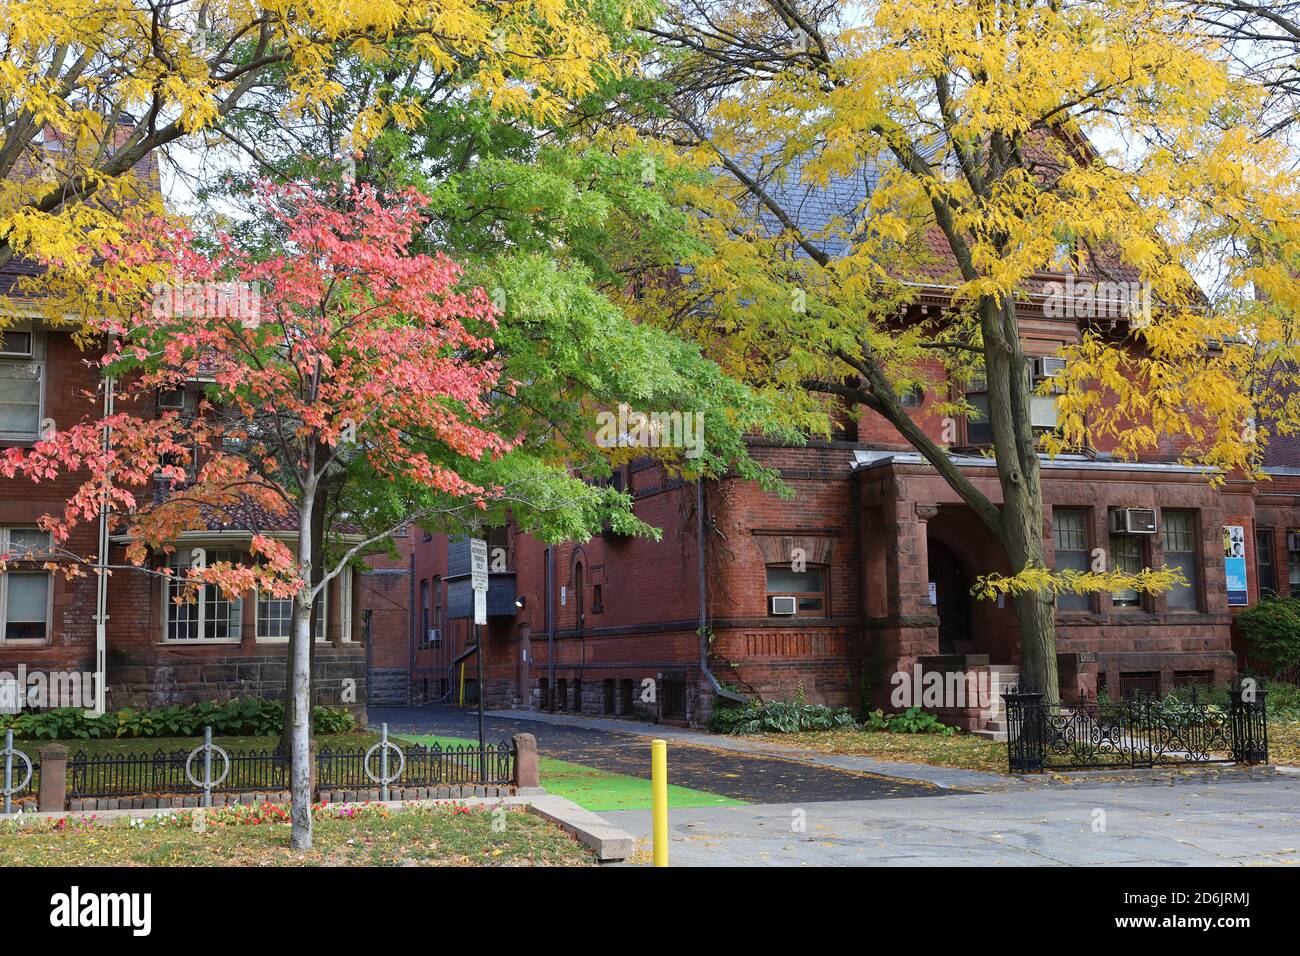 Toronto, Canada - le 16 octobre 2020 : campus de l'Université de Toronto, anciennes demeures transformées en édifices universitaires aux couleurs d'automne Banque D'Images